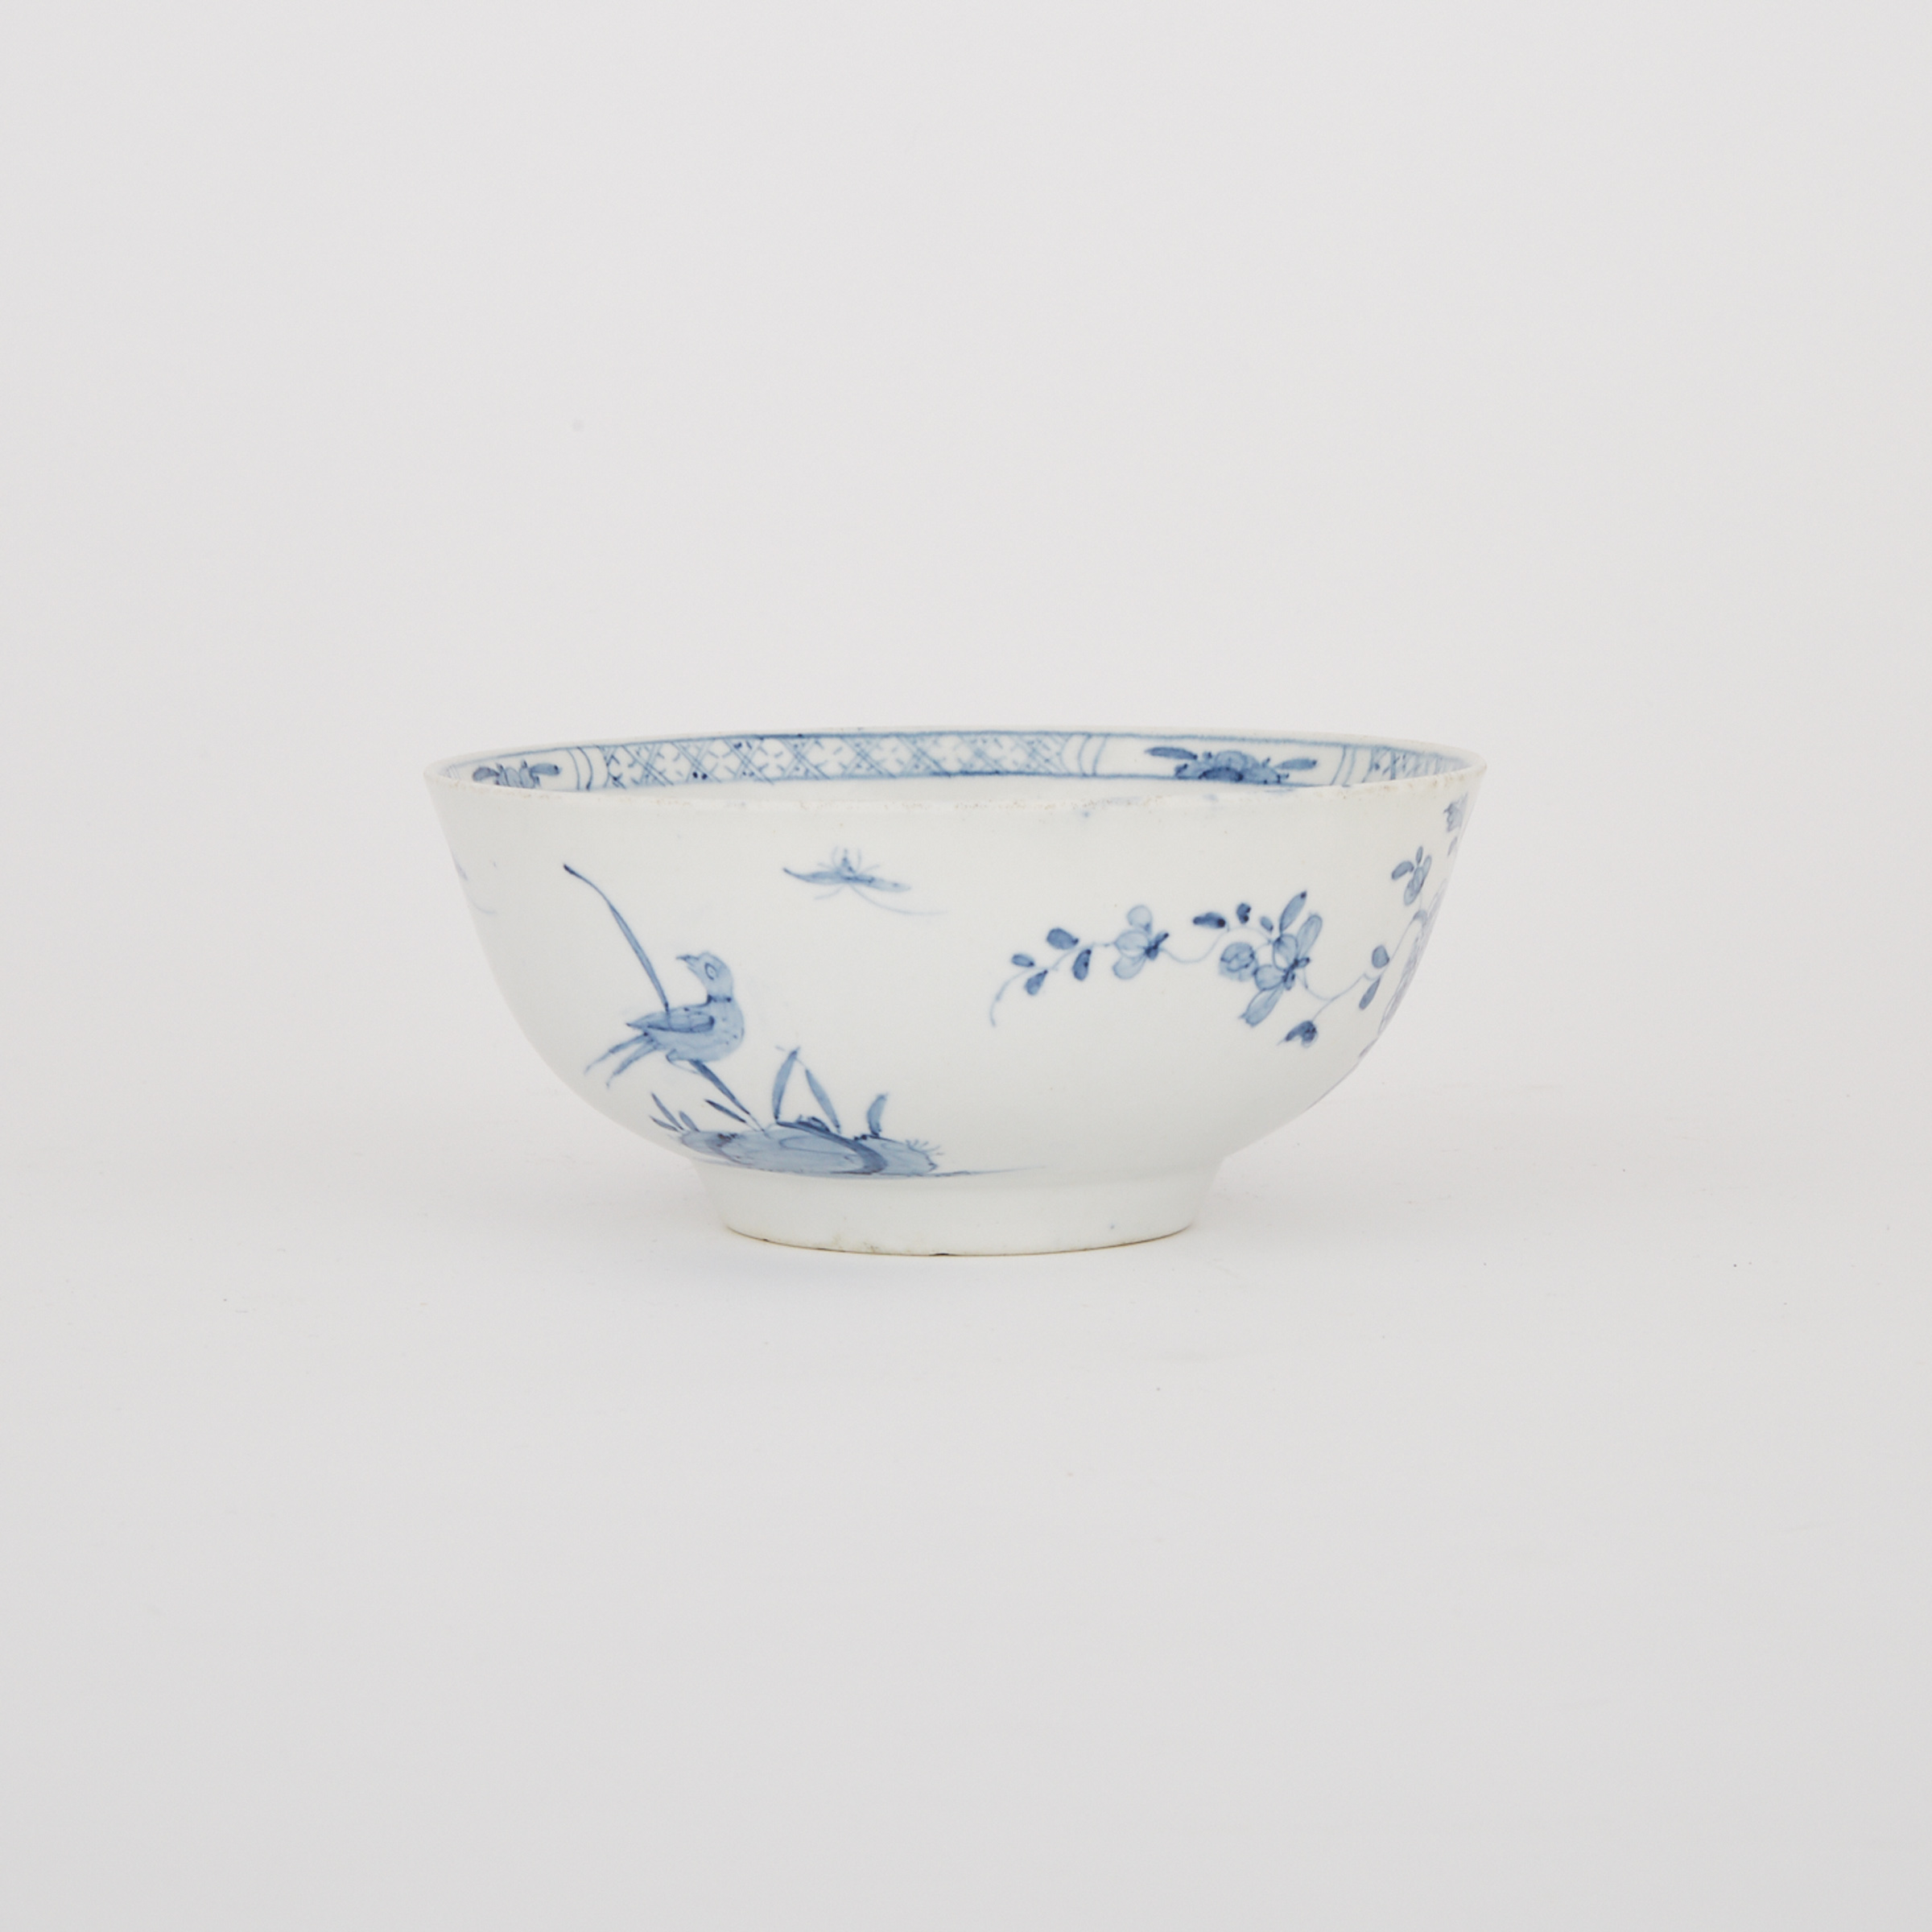 Worcester ‘Warbler’ Pattern Waste Bowl, c.1754-1760